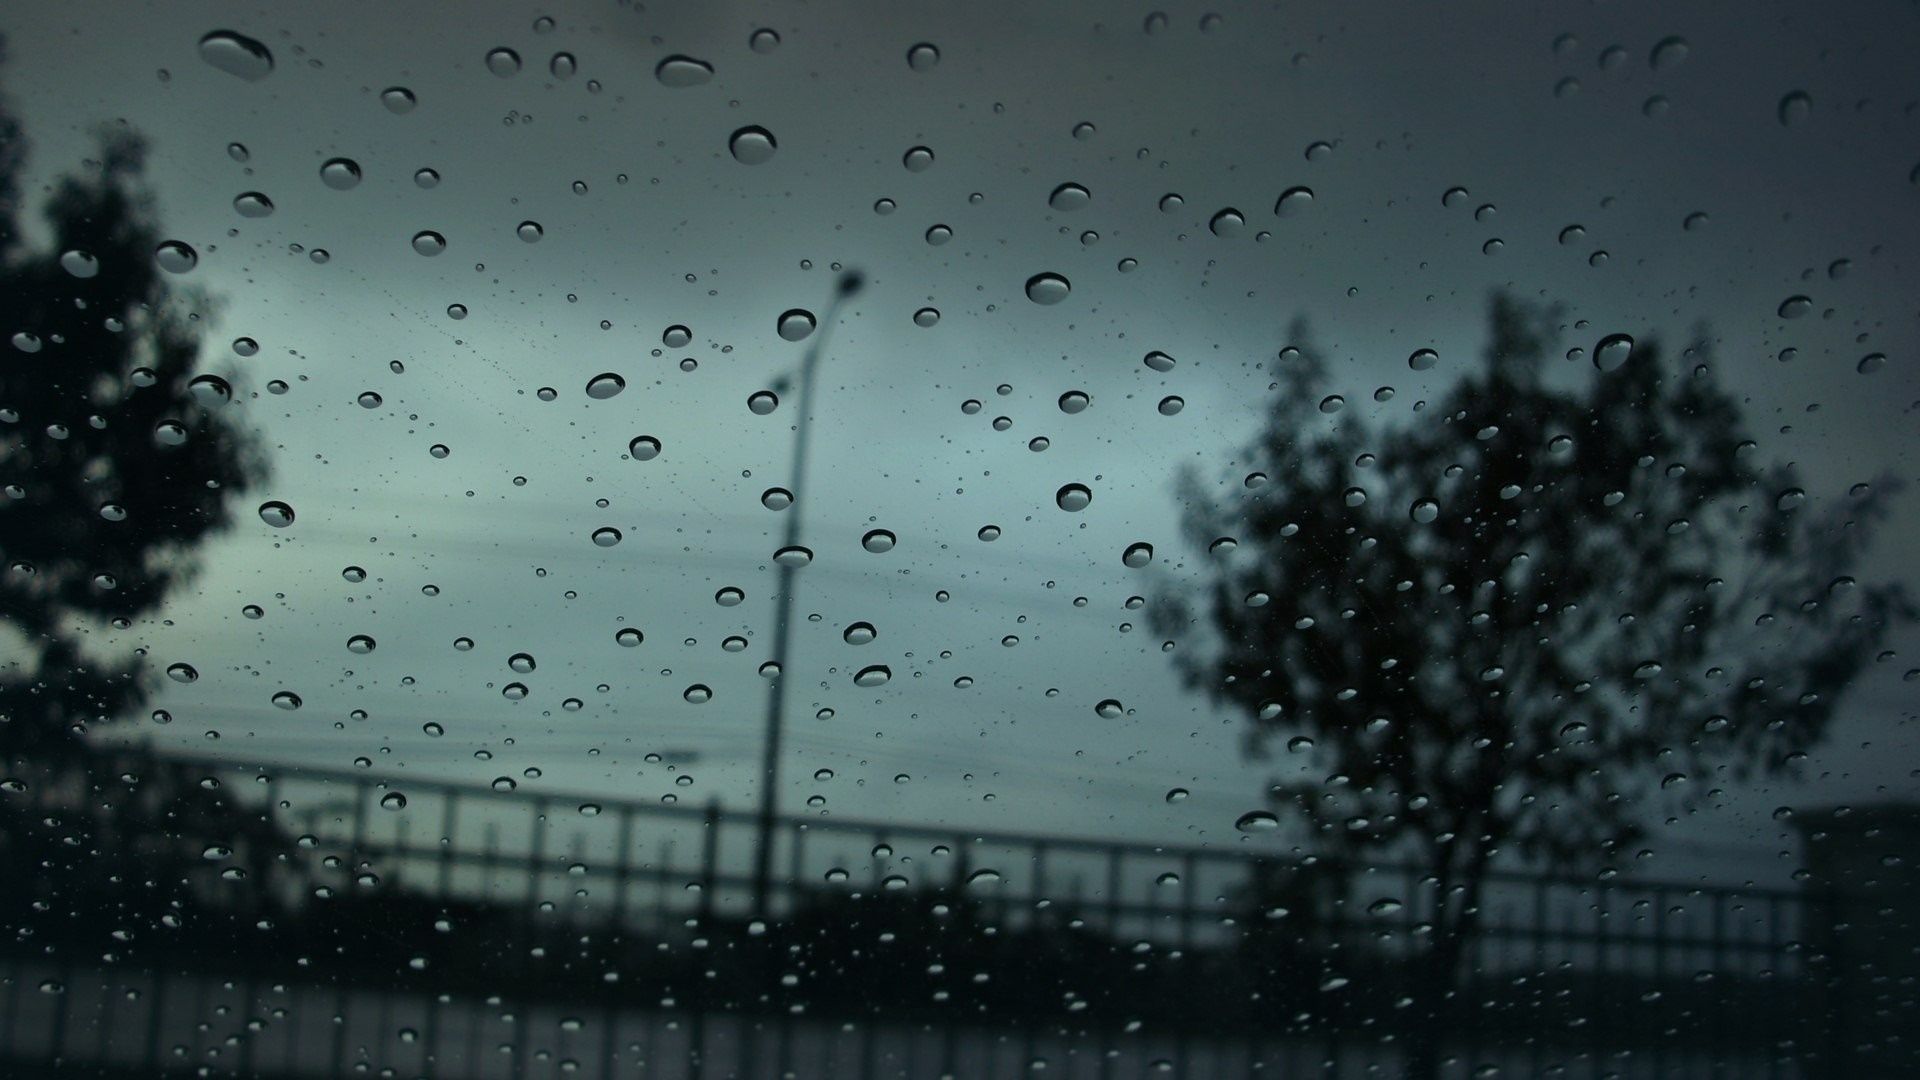 A view of the rain through dirty glass - Rain